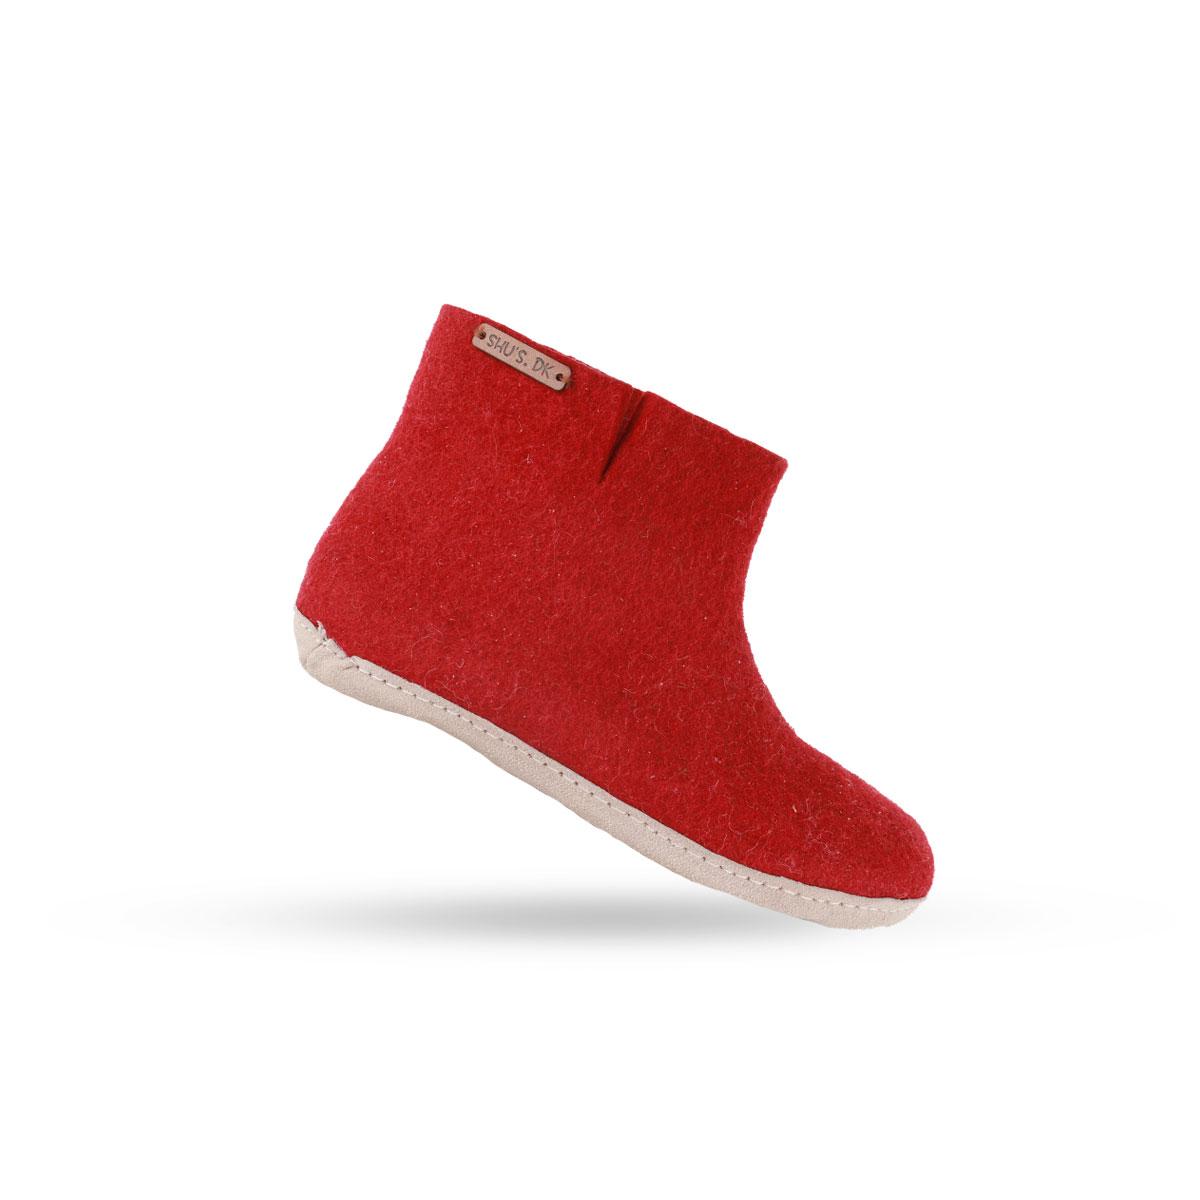 Uldstøvle (100% ren uld) - Model Rød m/sål i skind - Dansk Design fra SHUS